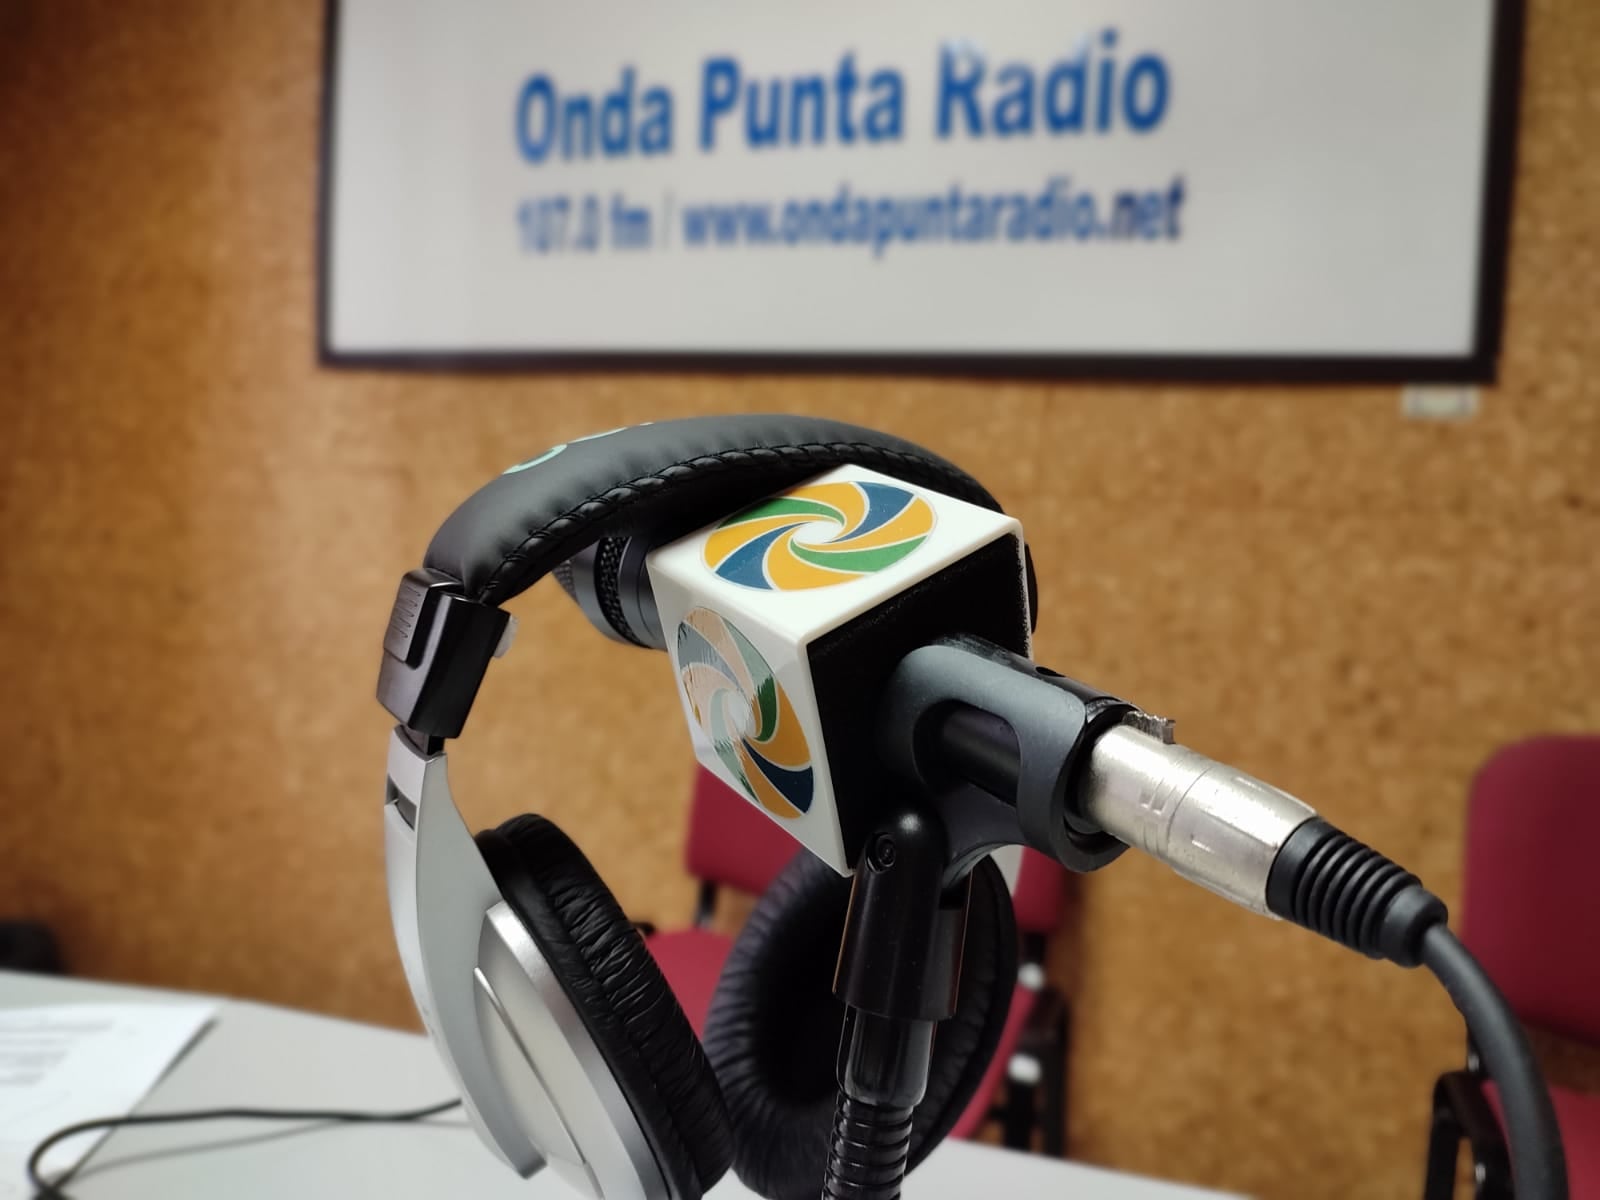 Onda Punta Radio convoca un concurso escolar de dibujo y de lema por su 30 aniversario